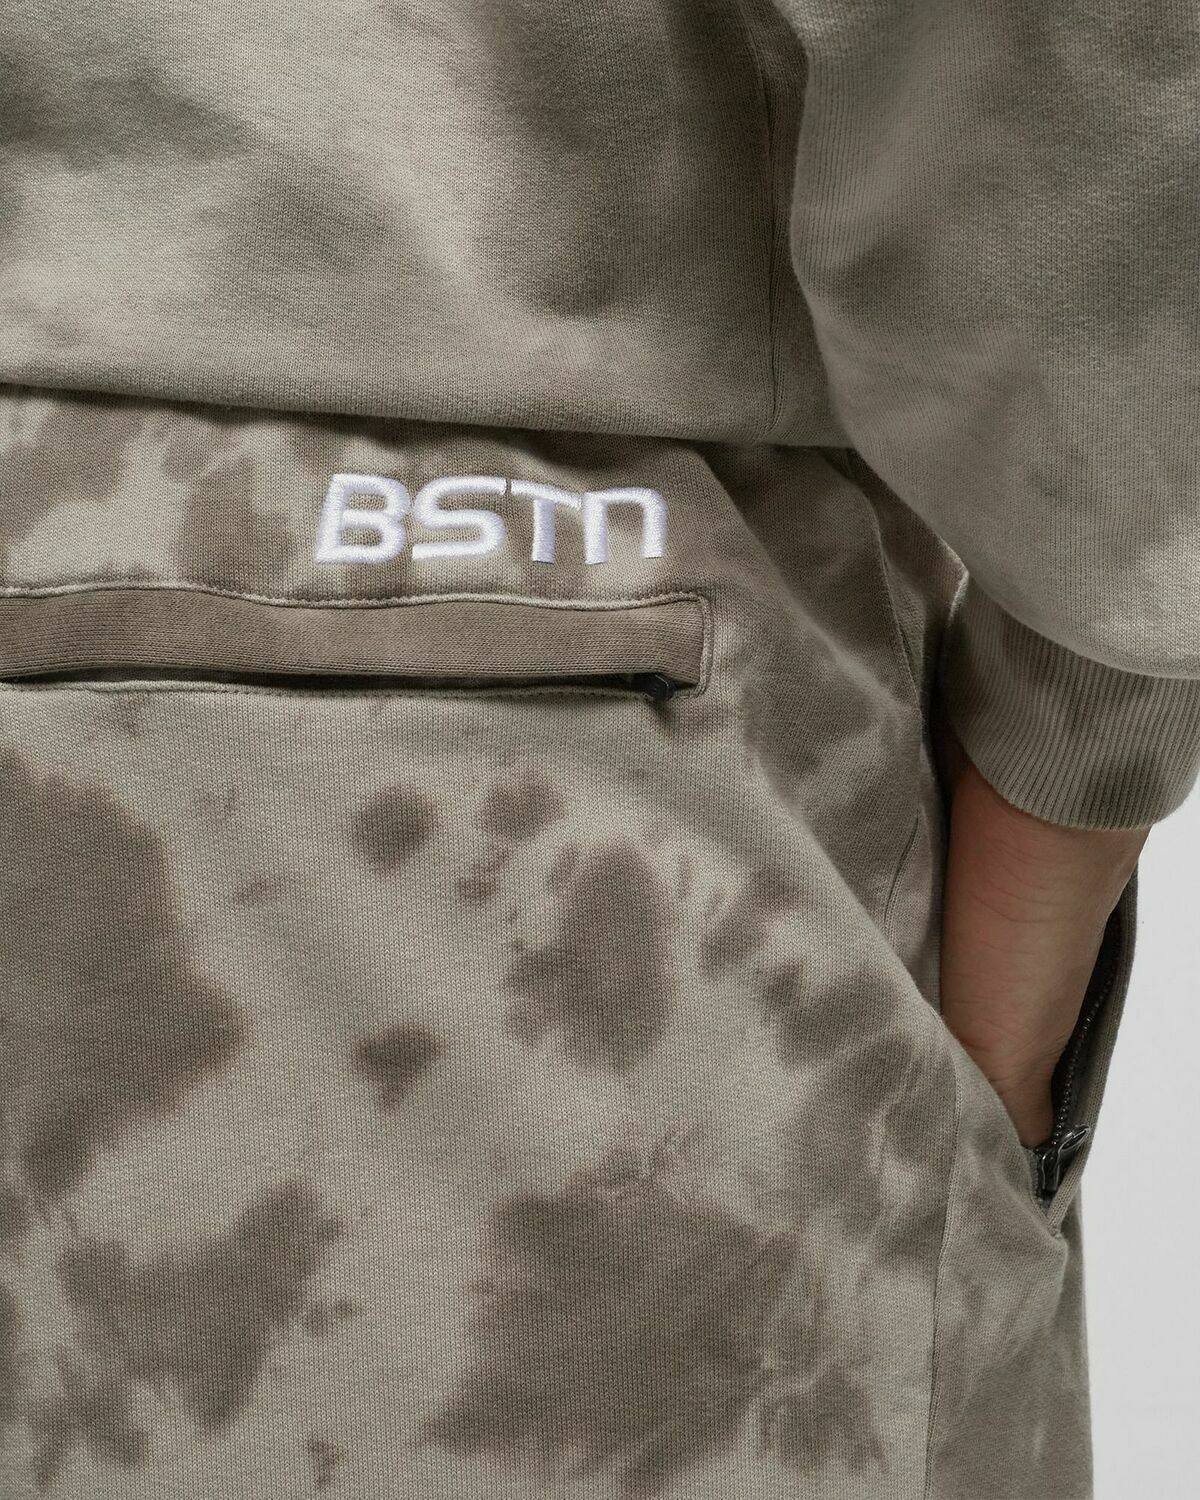 Bstn Brand Tie Dye Sweatshorts Beige - Mens - Sport & Team Shorts